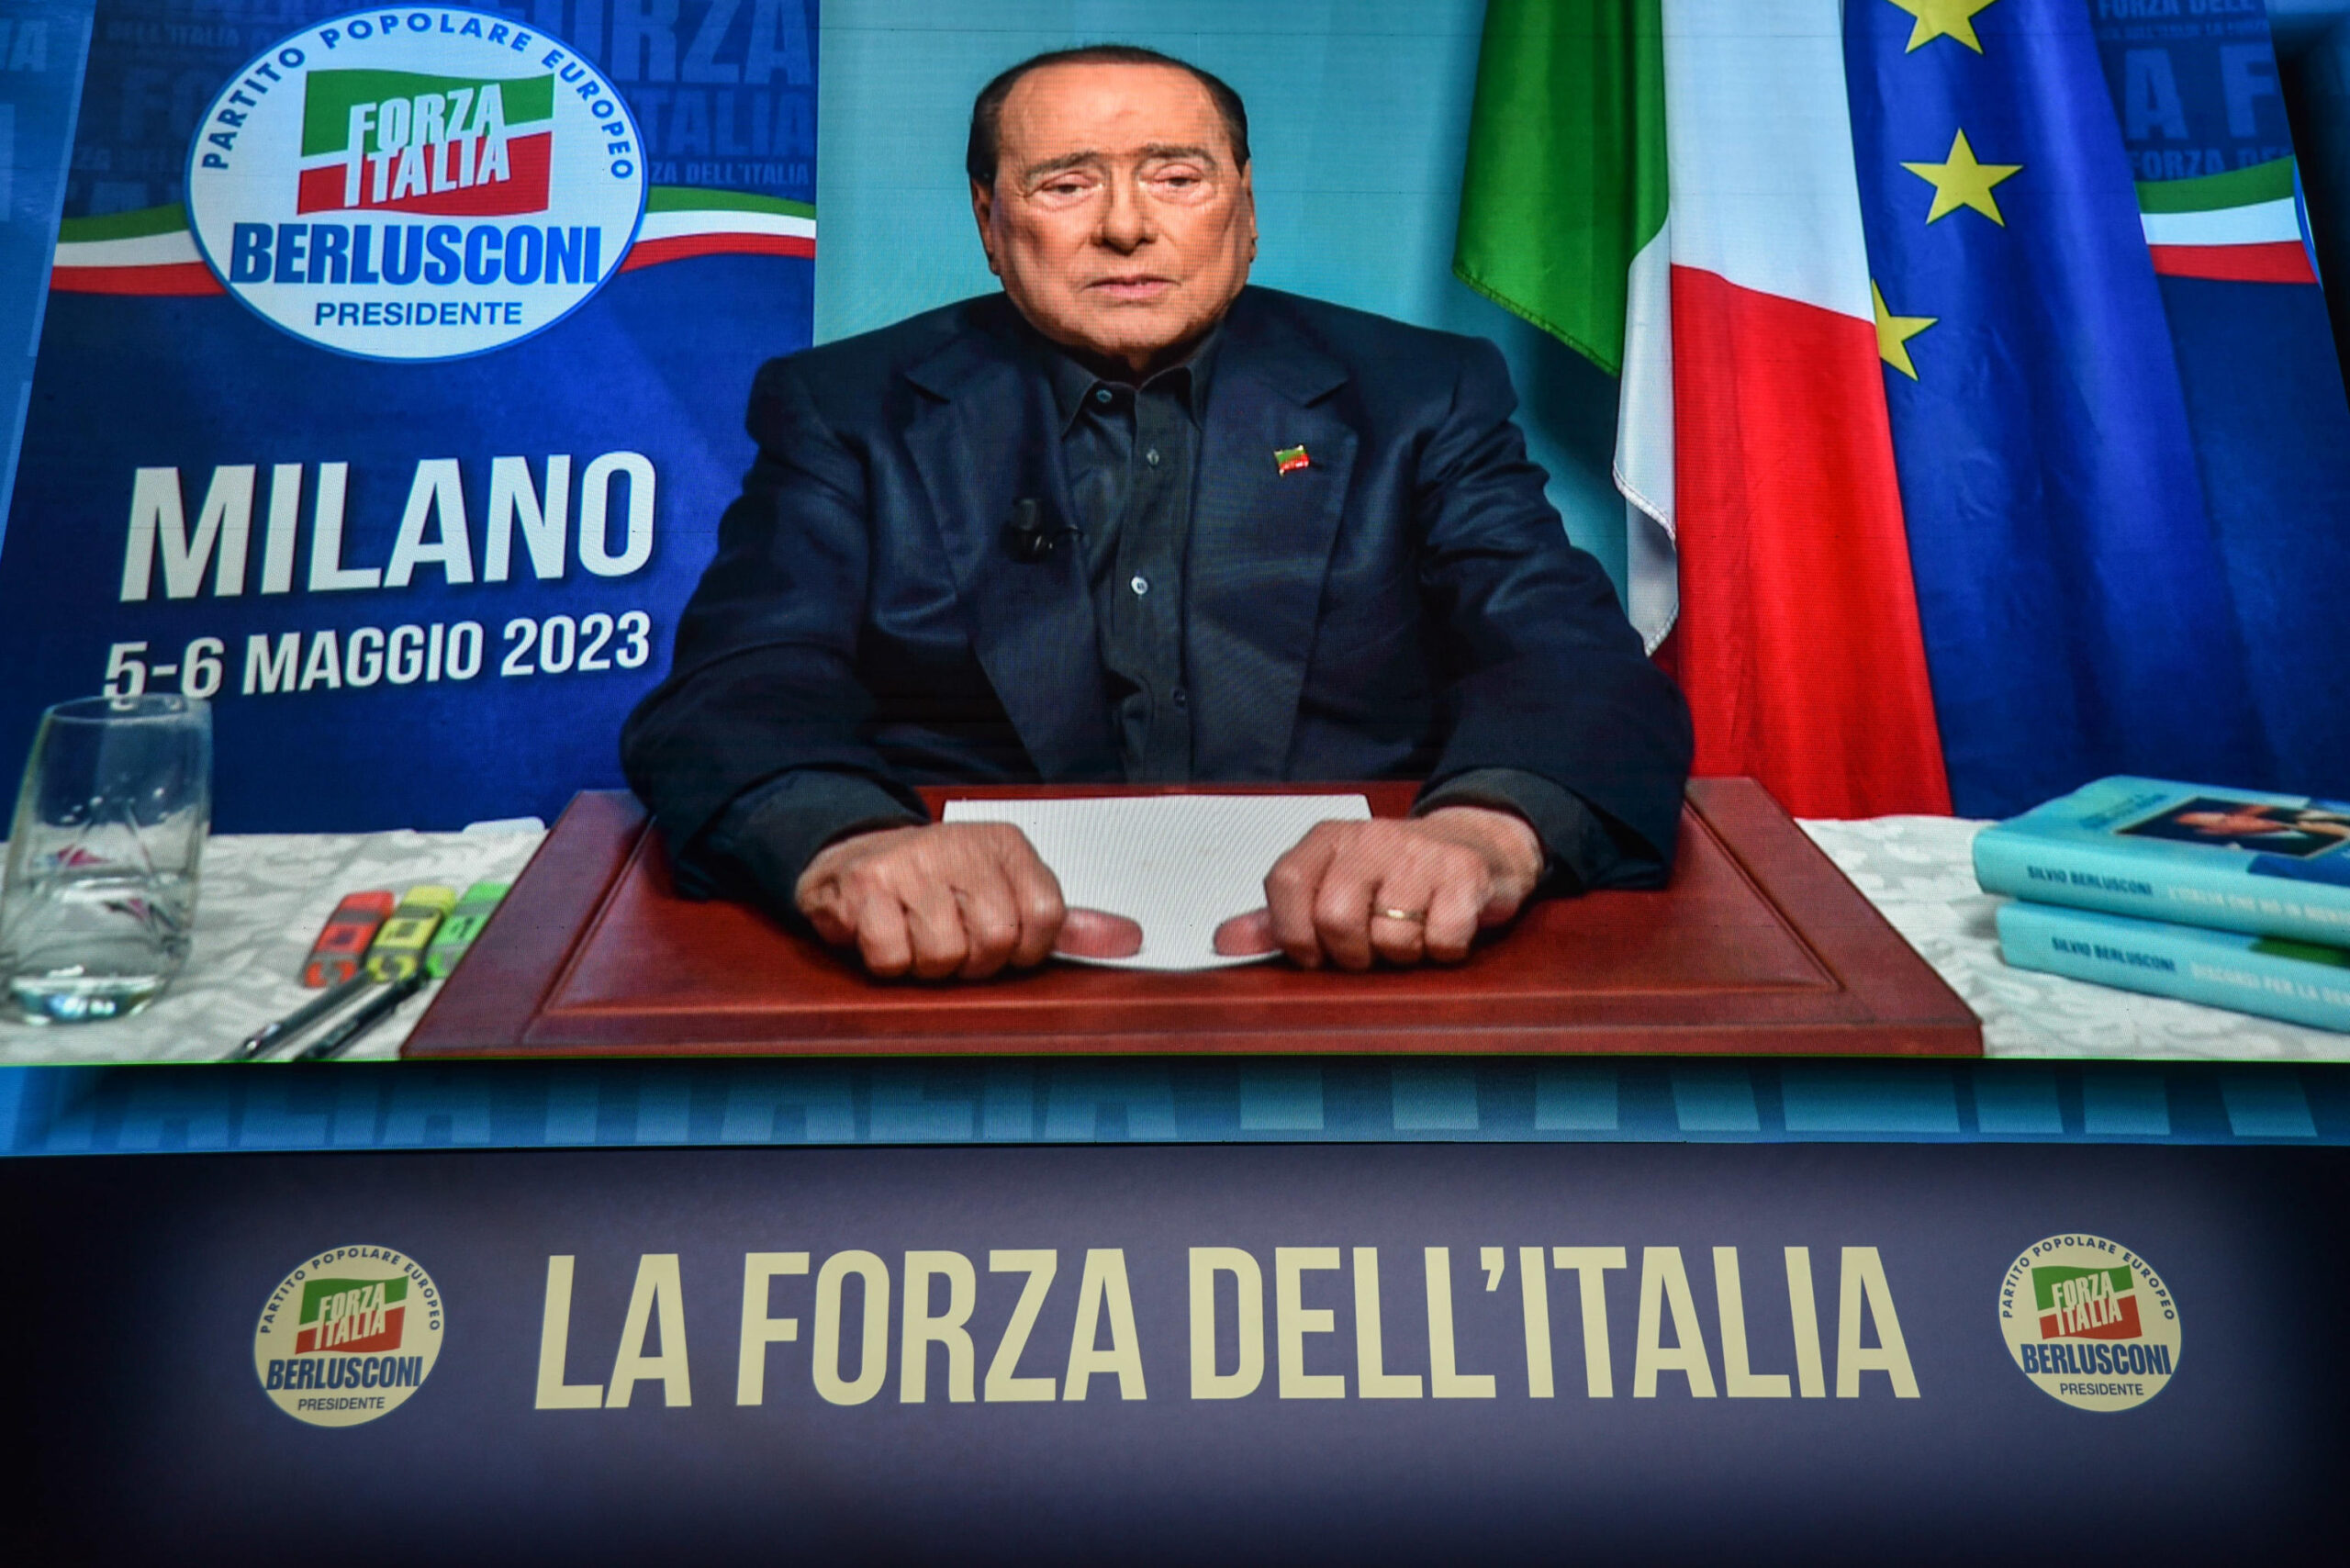 Funerali Berlusconi, a Milano tutto pronto per le esequie in Duomo